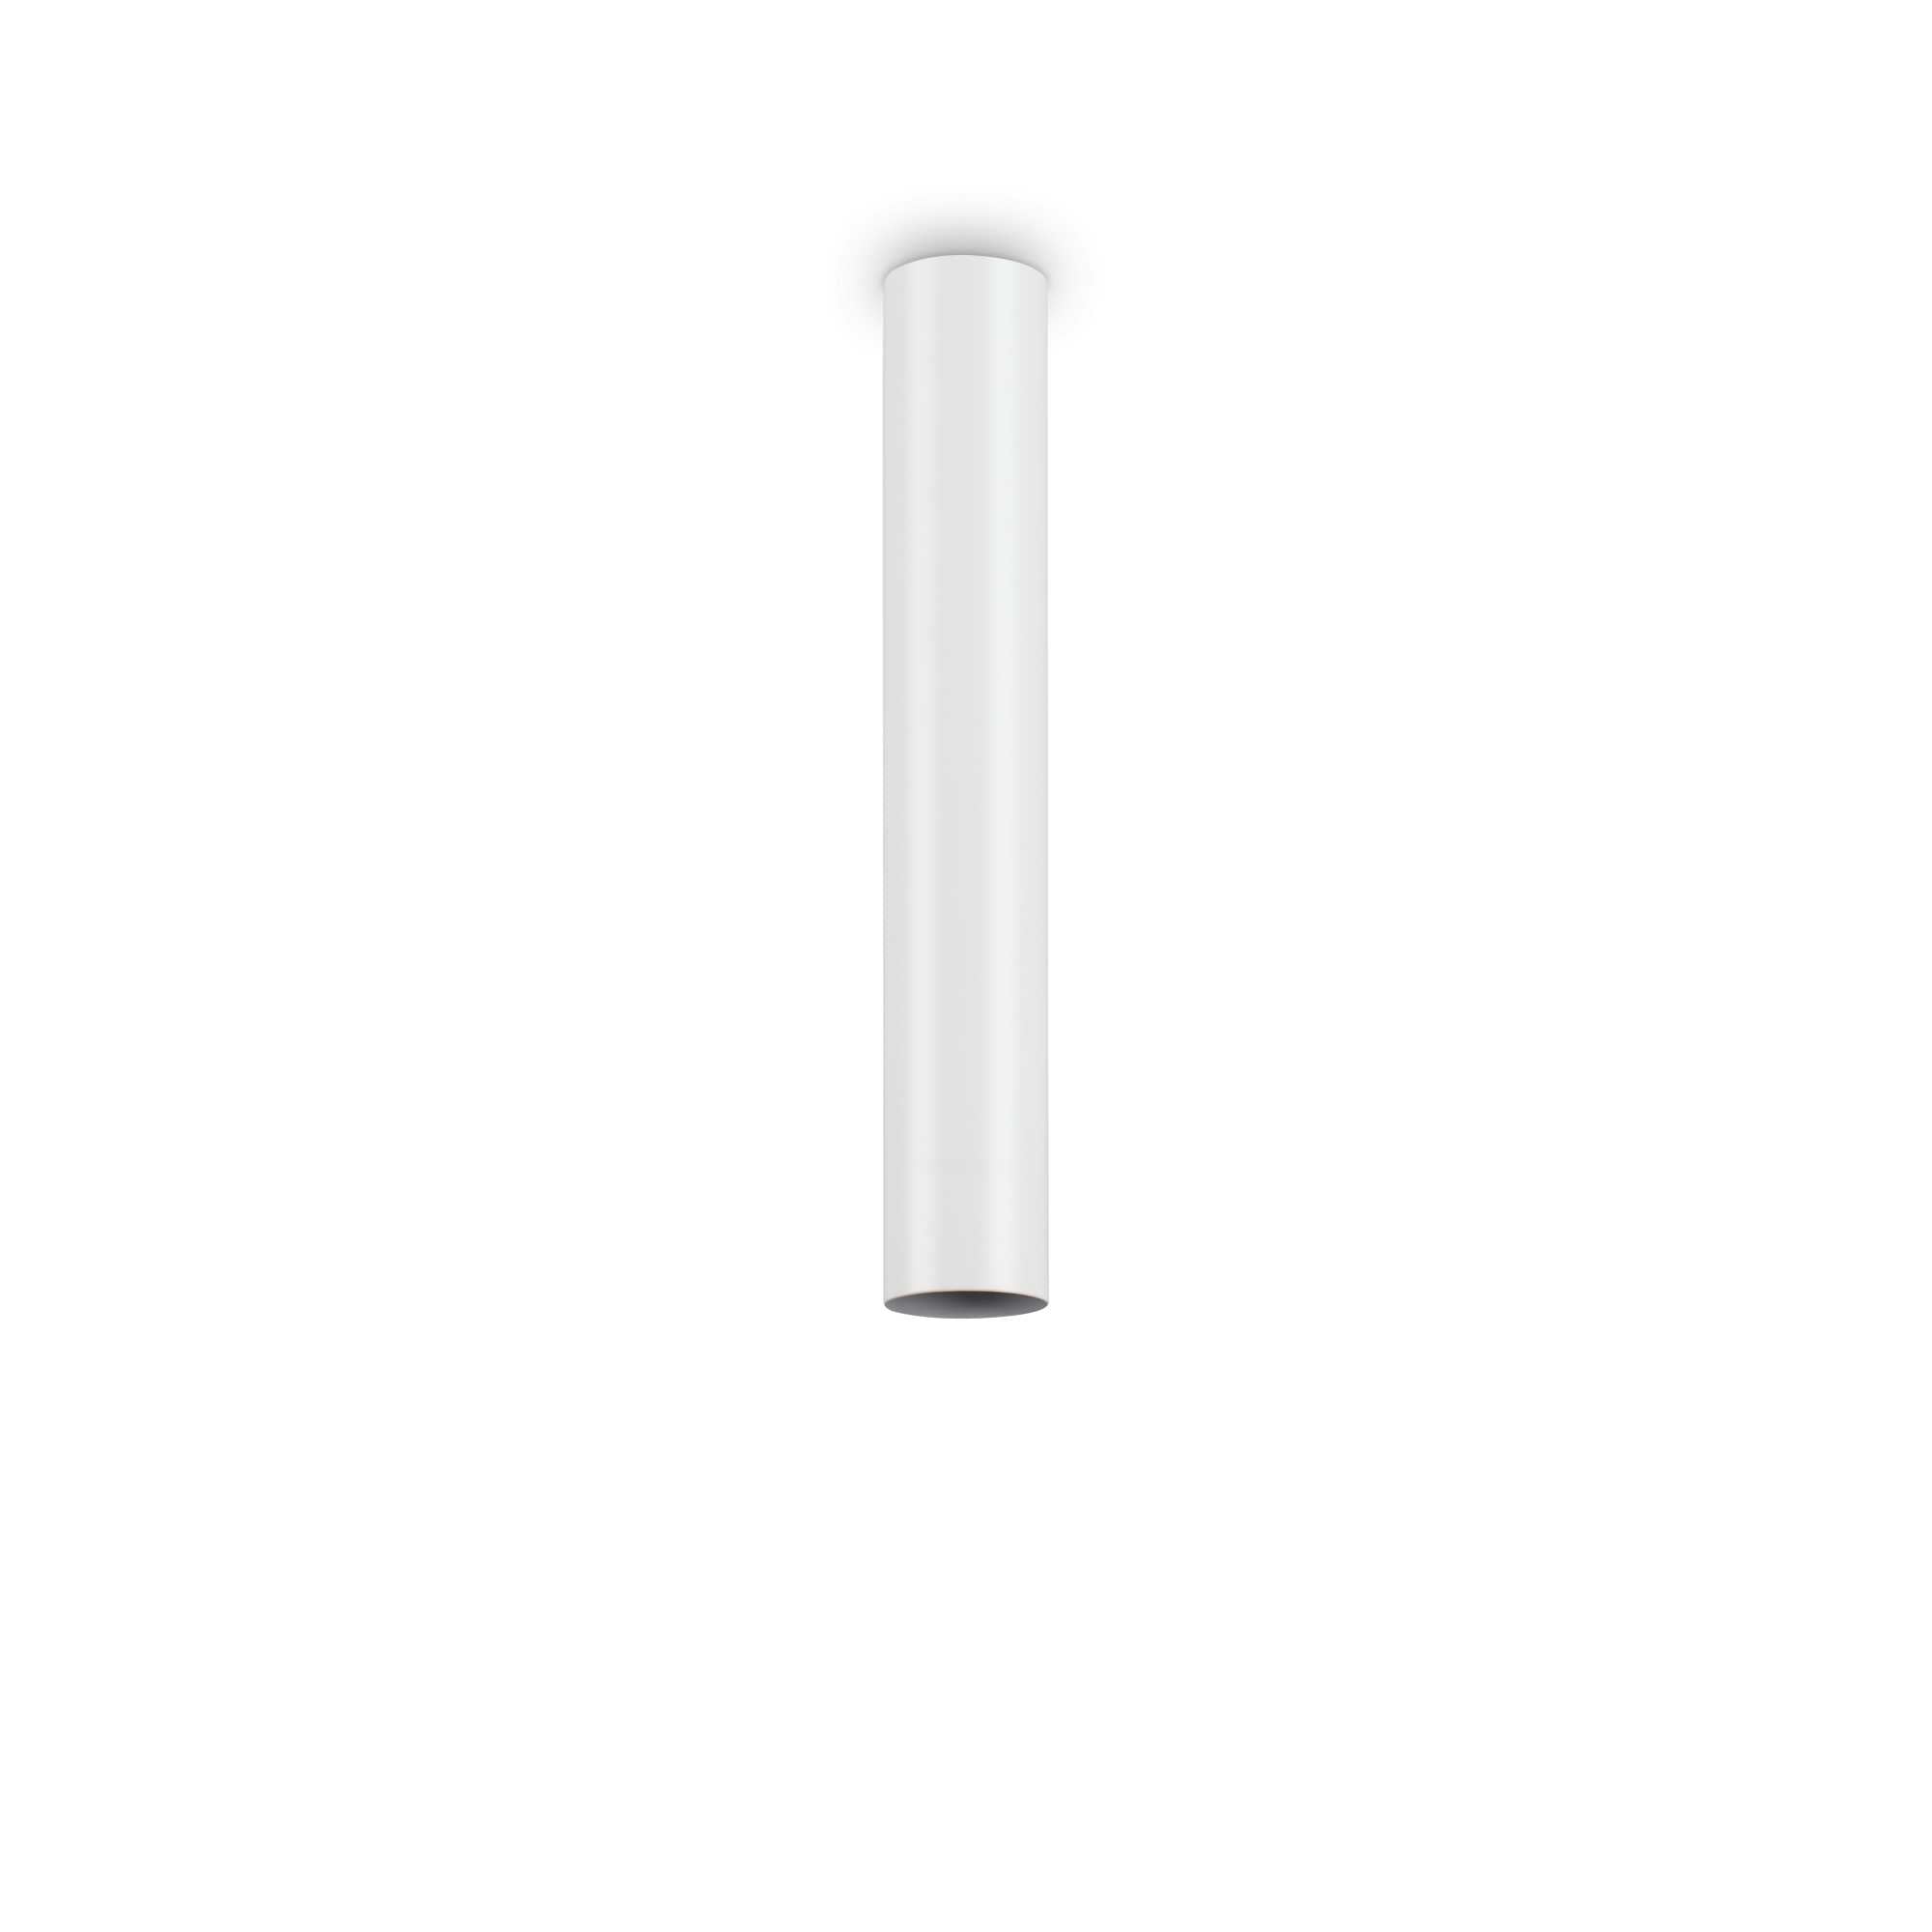 Slim Cylindrical Light | Black or White